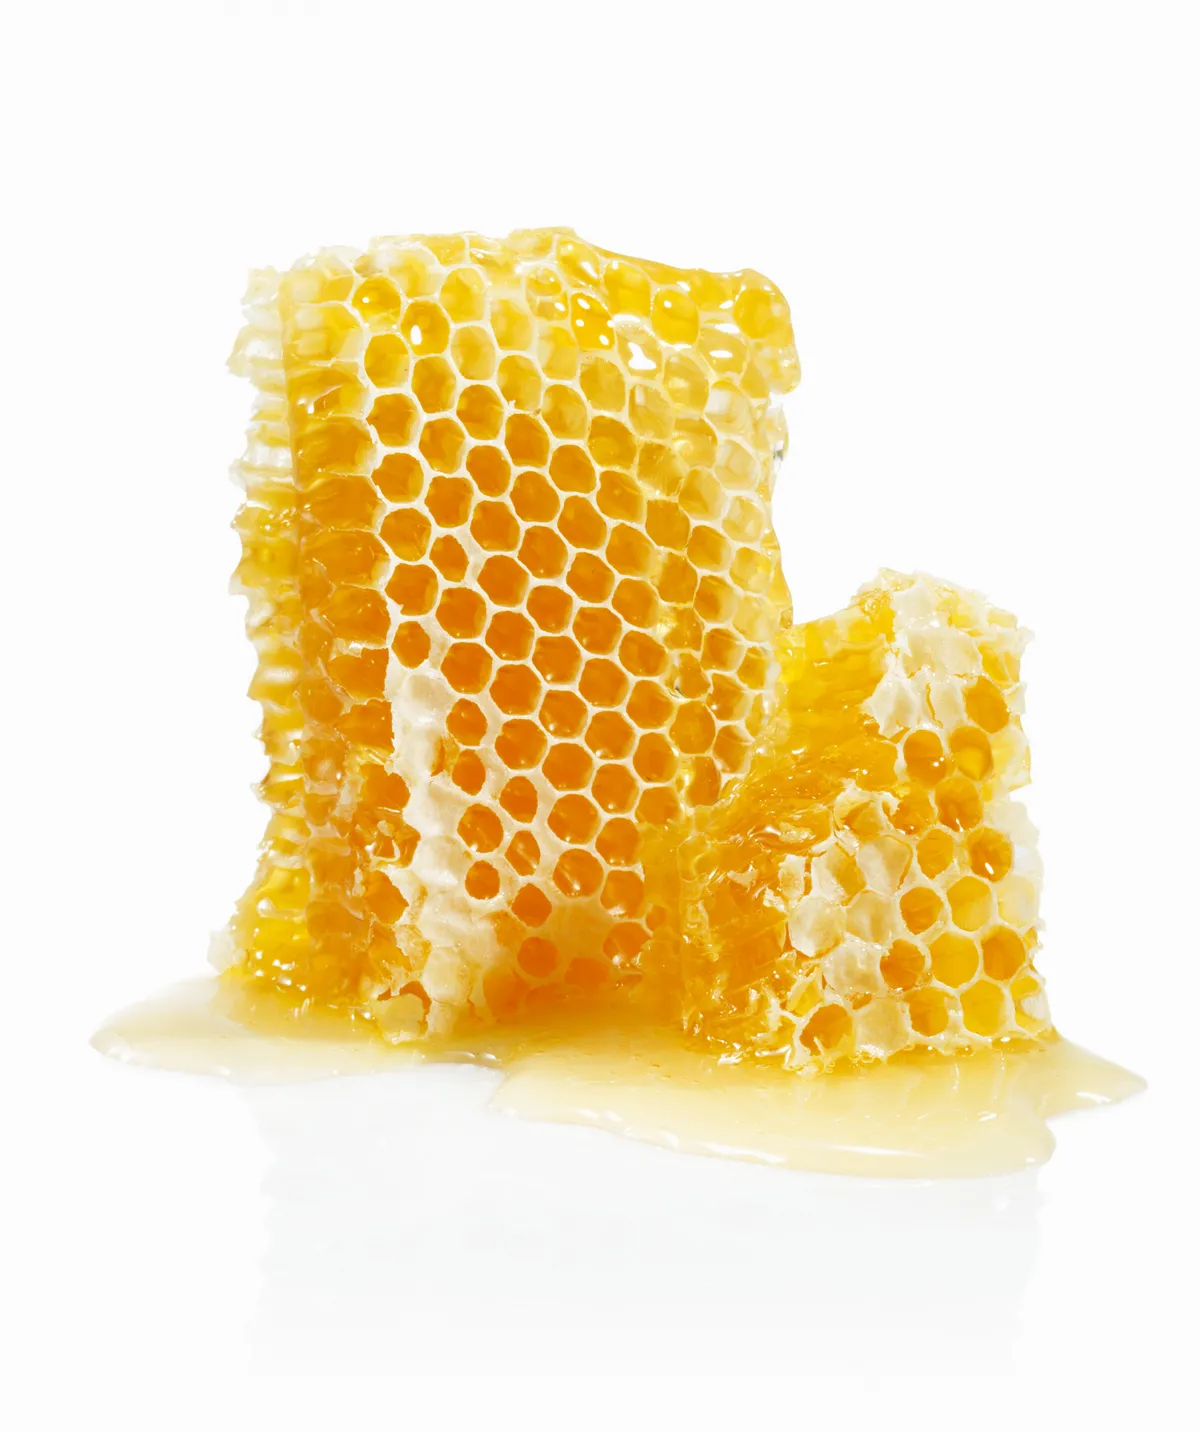 Honeycomb. © Lauren Burke/Getty